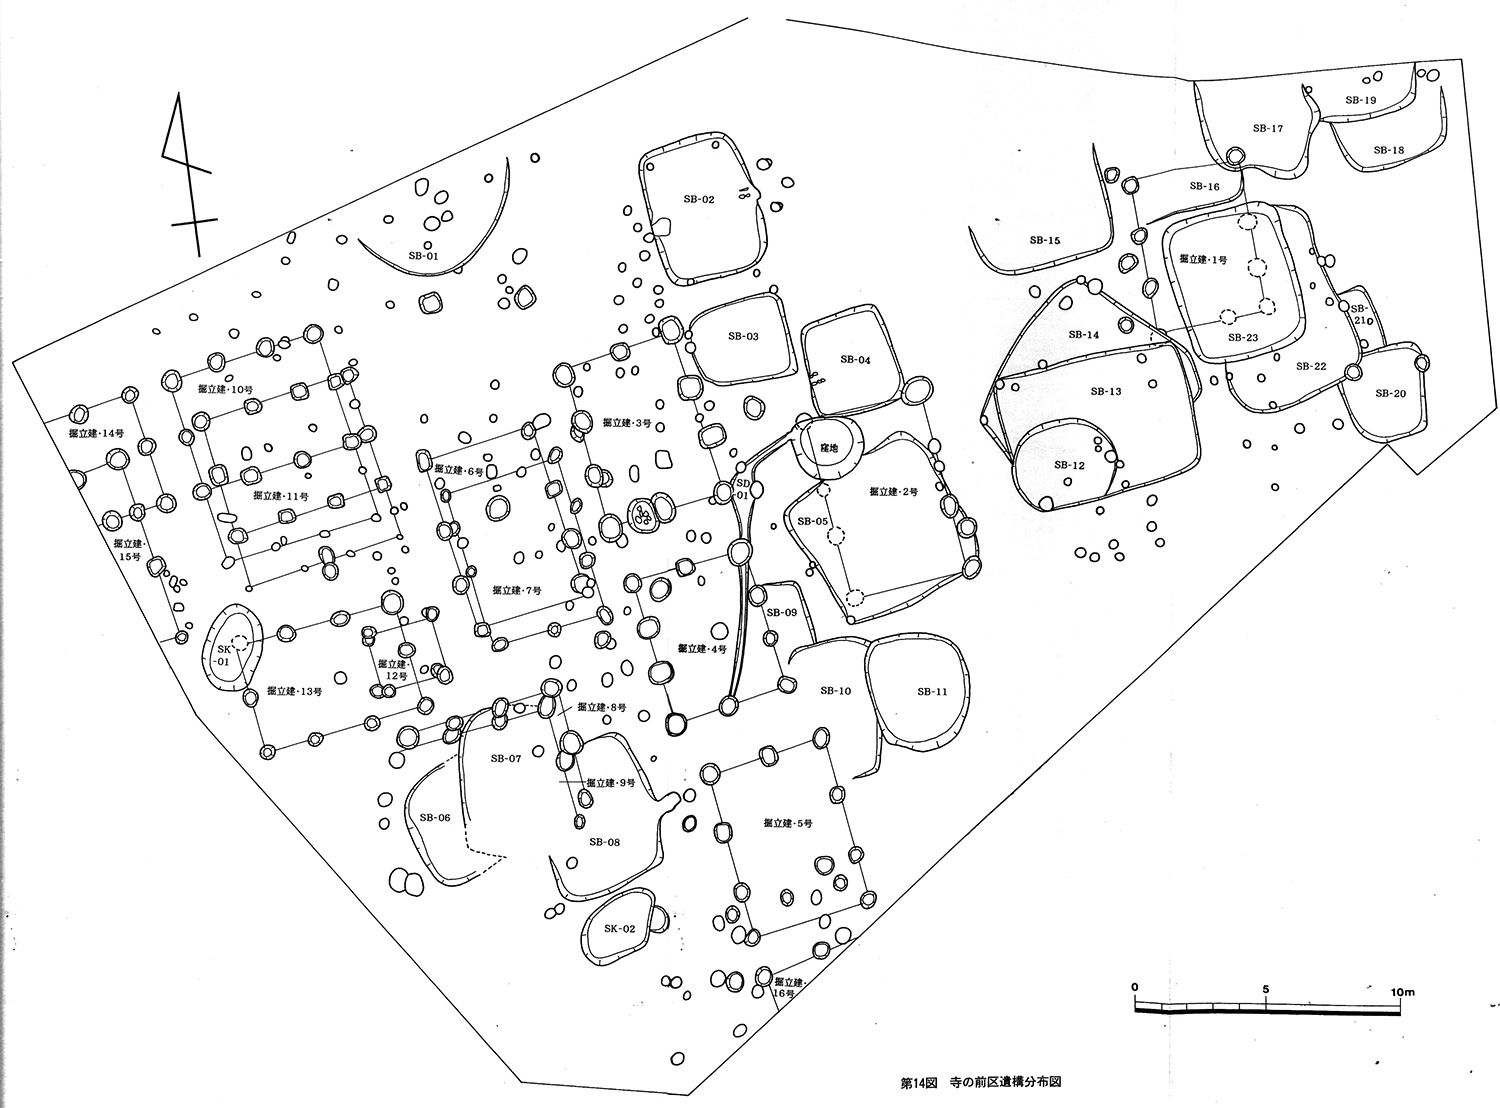 寺の前地区遺構分布図